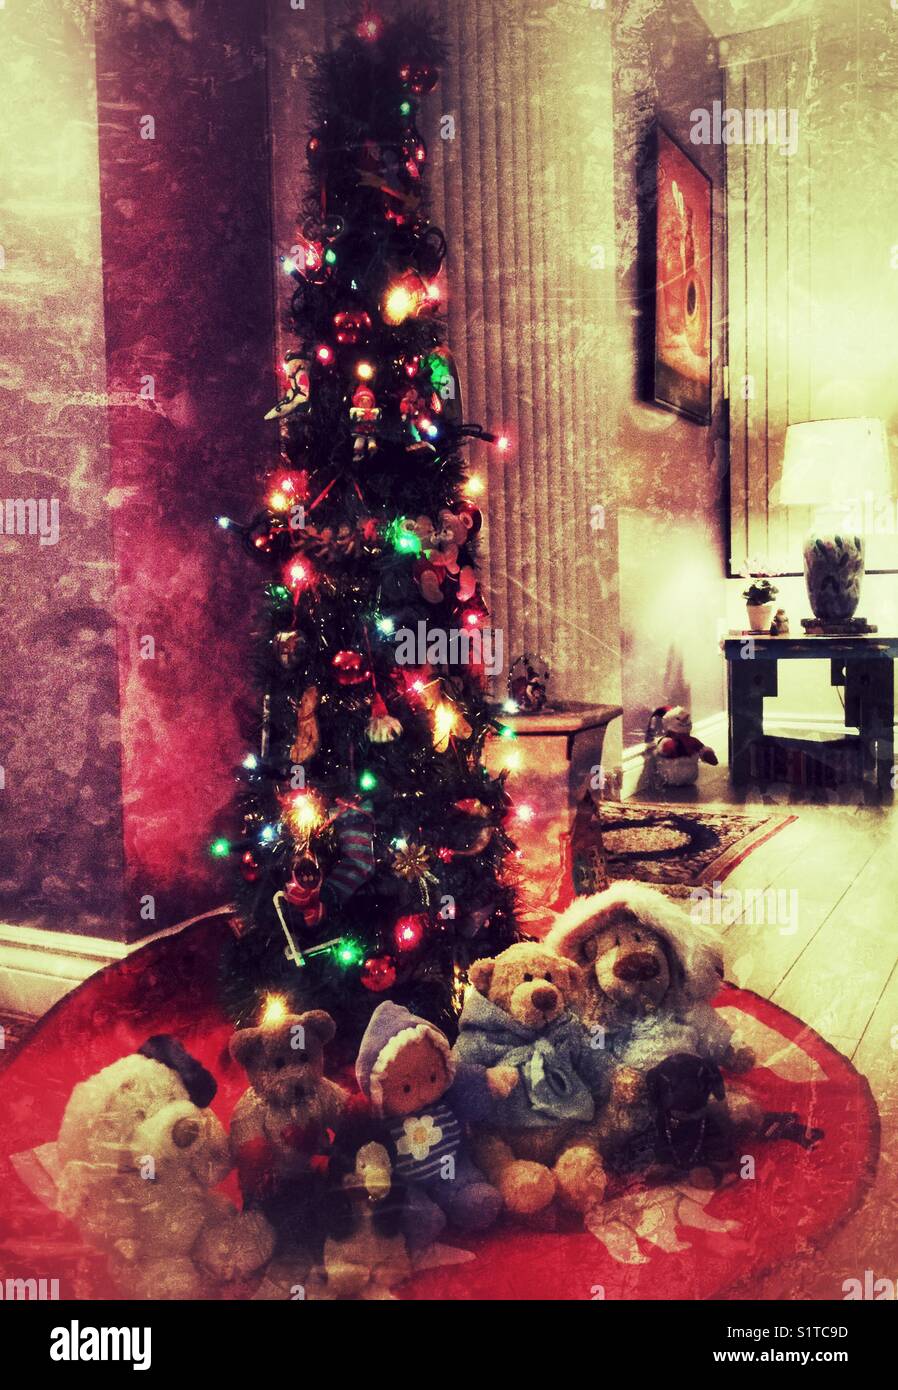 Animaux en peluche assis devant un arbre de Noël. Banque D'Images